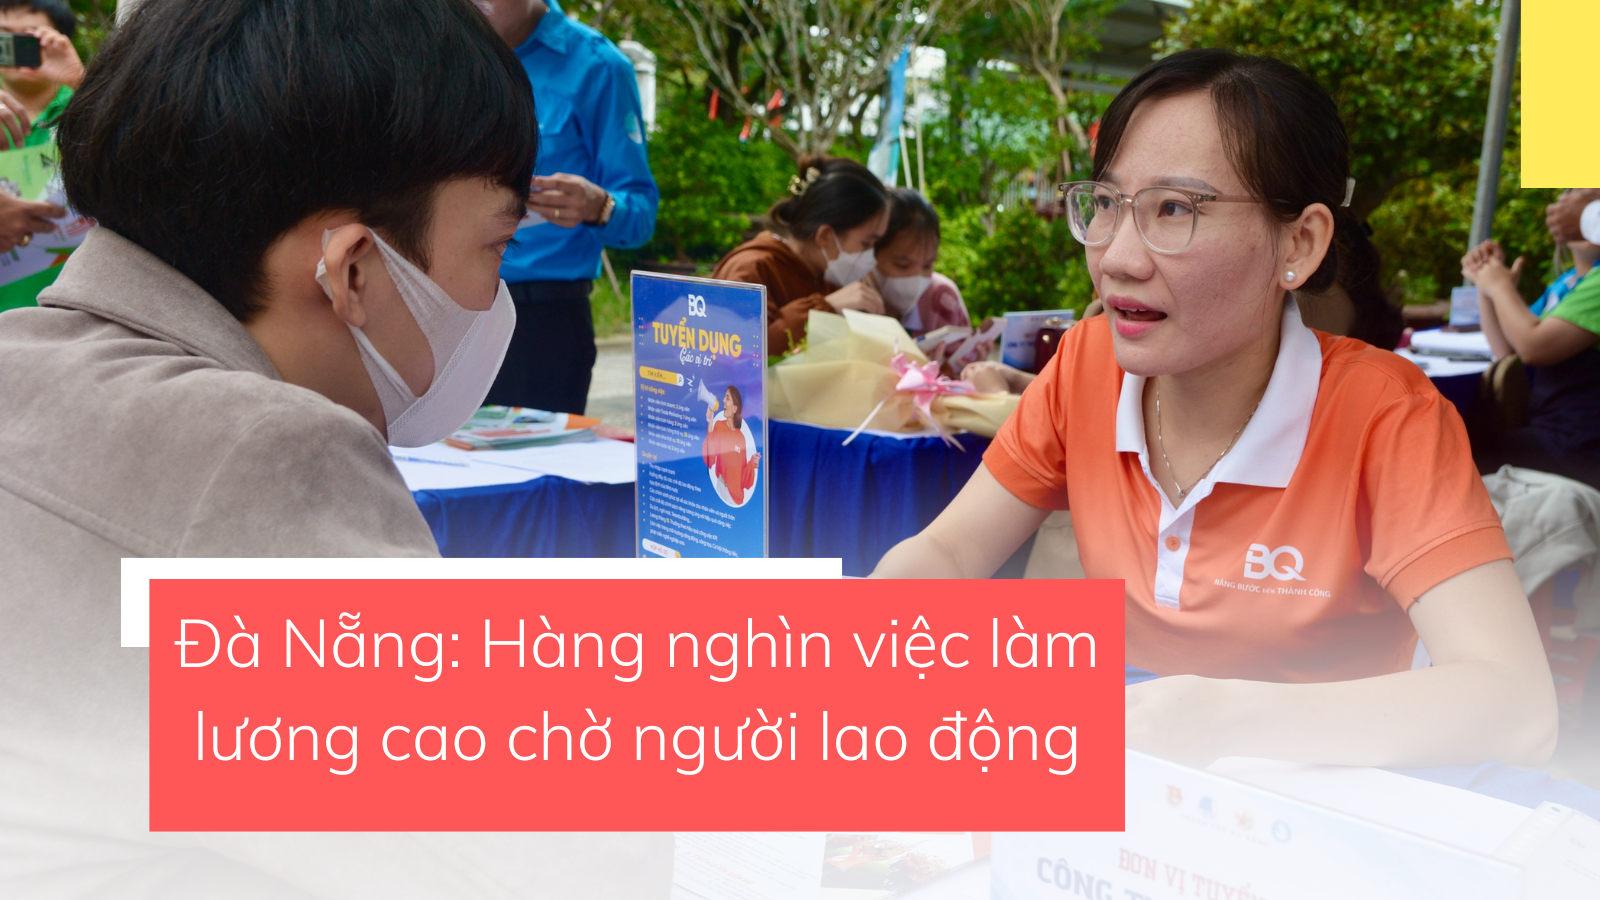 Đà Nẵng: Hàng nghìn việc làm lương cao chờ người lao động